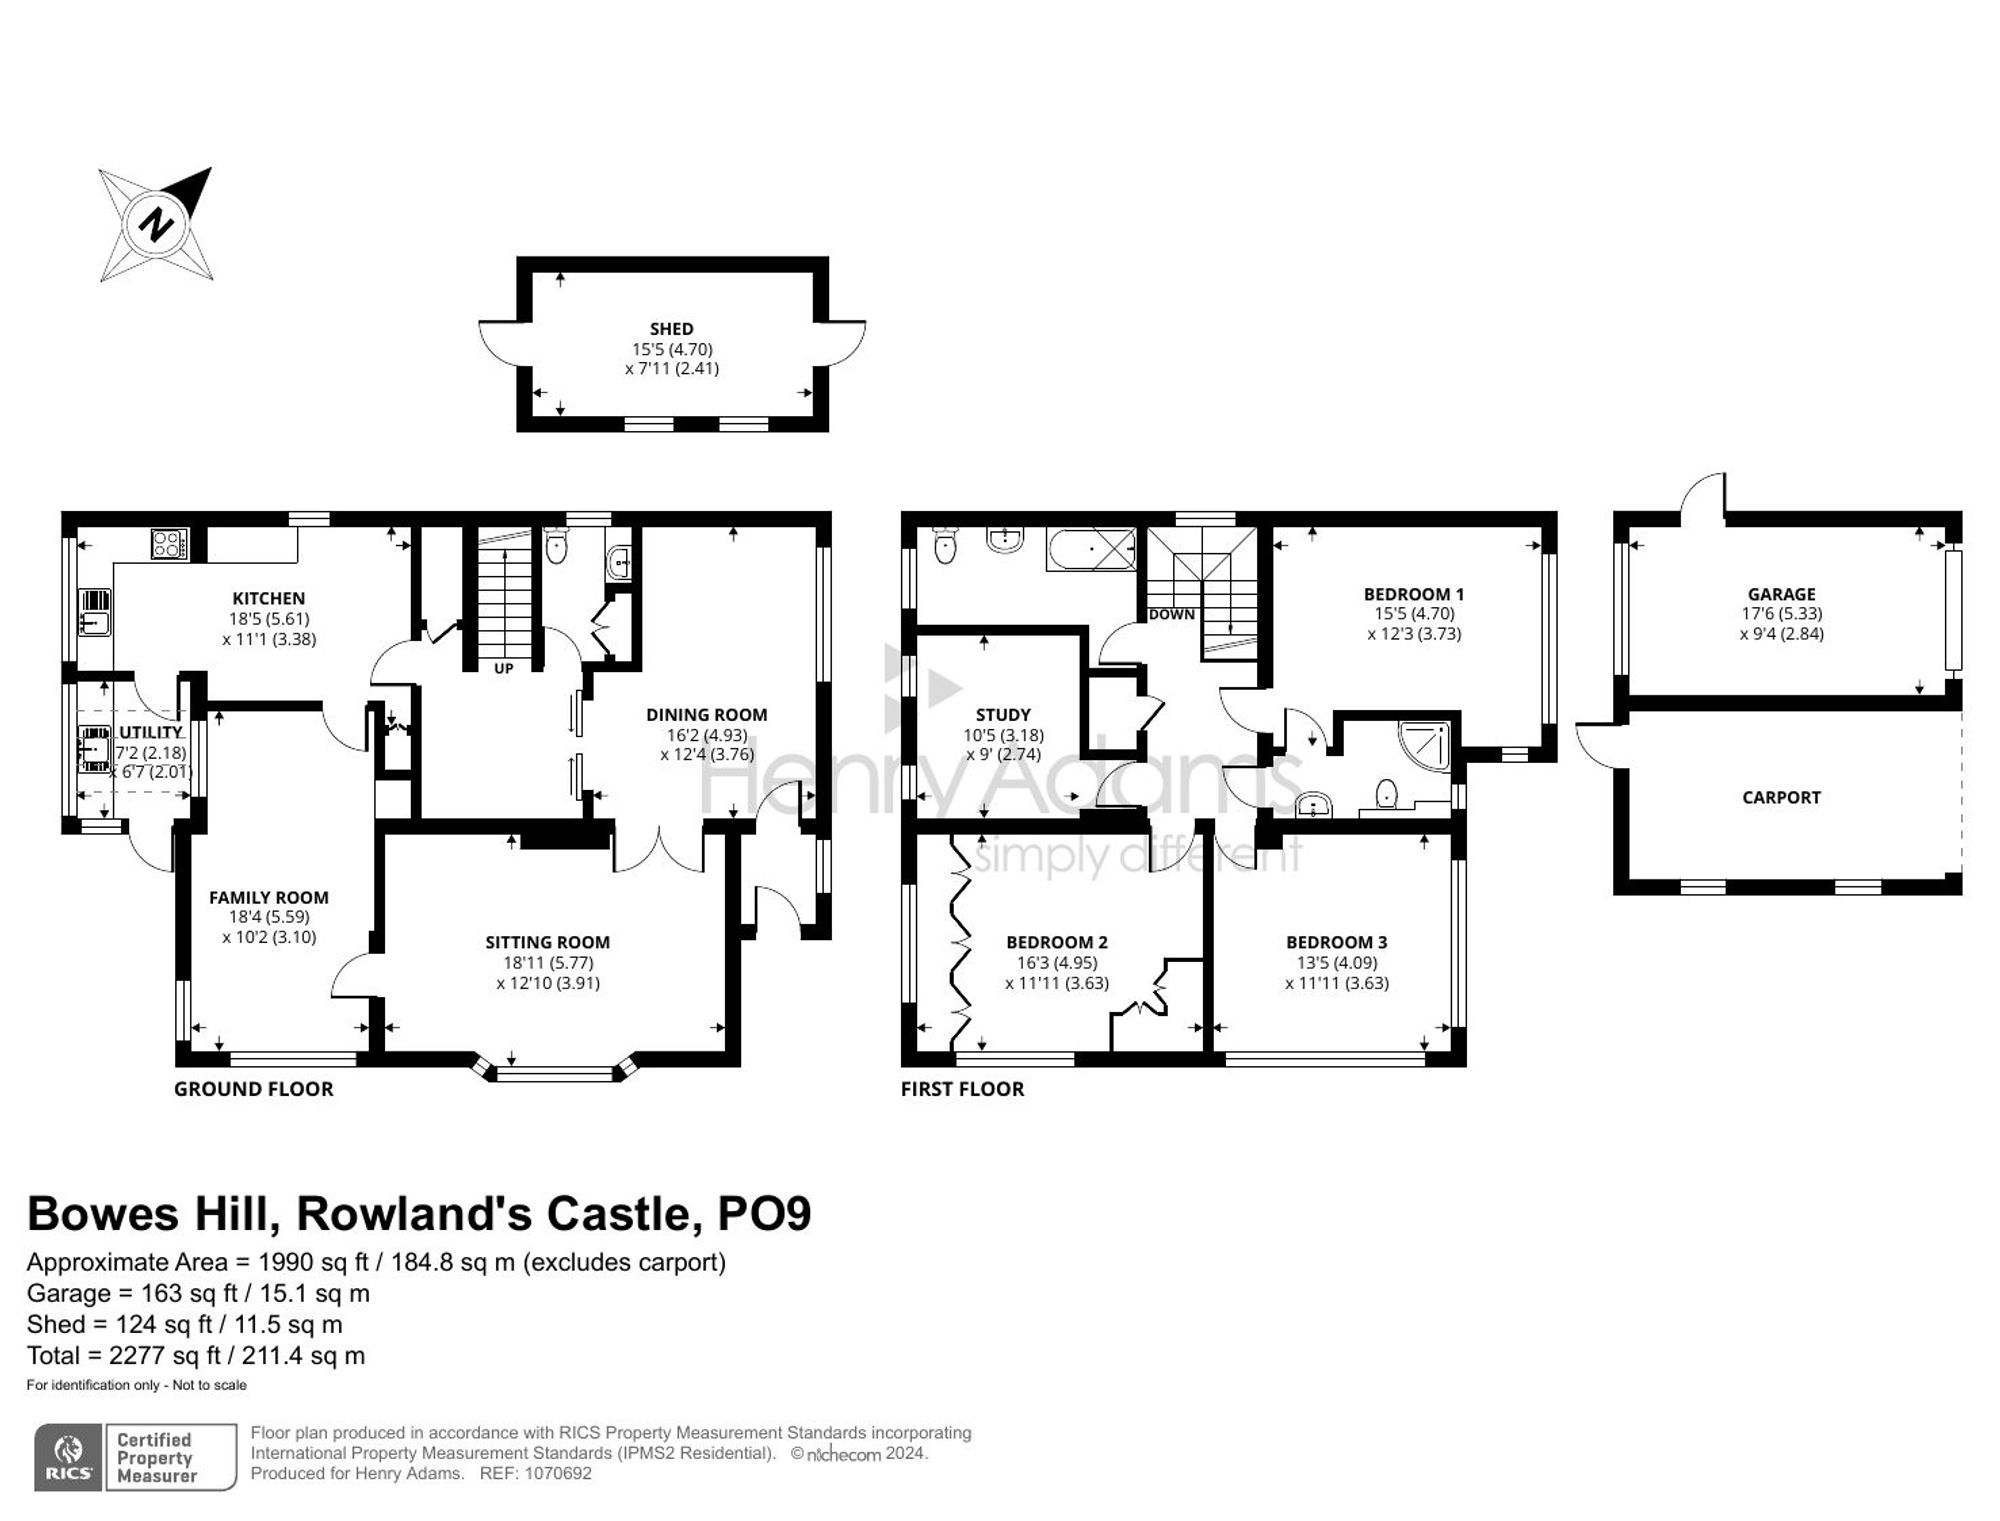 Bowes Hill, Rowland's Castle, PO9 floorplans